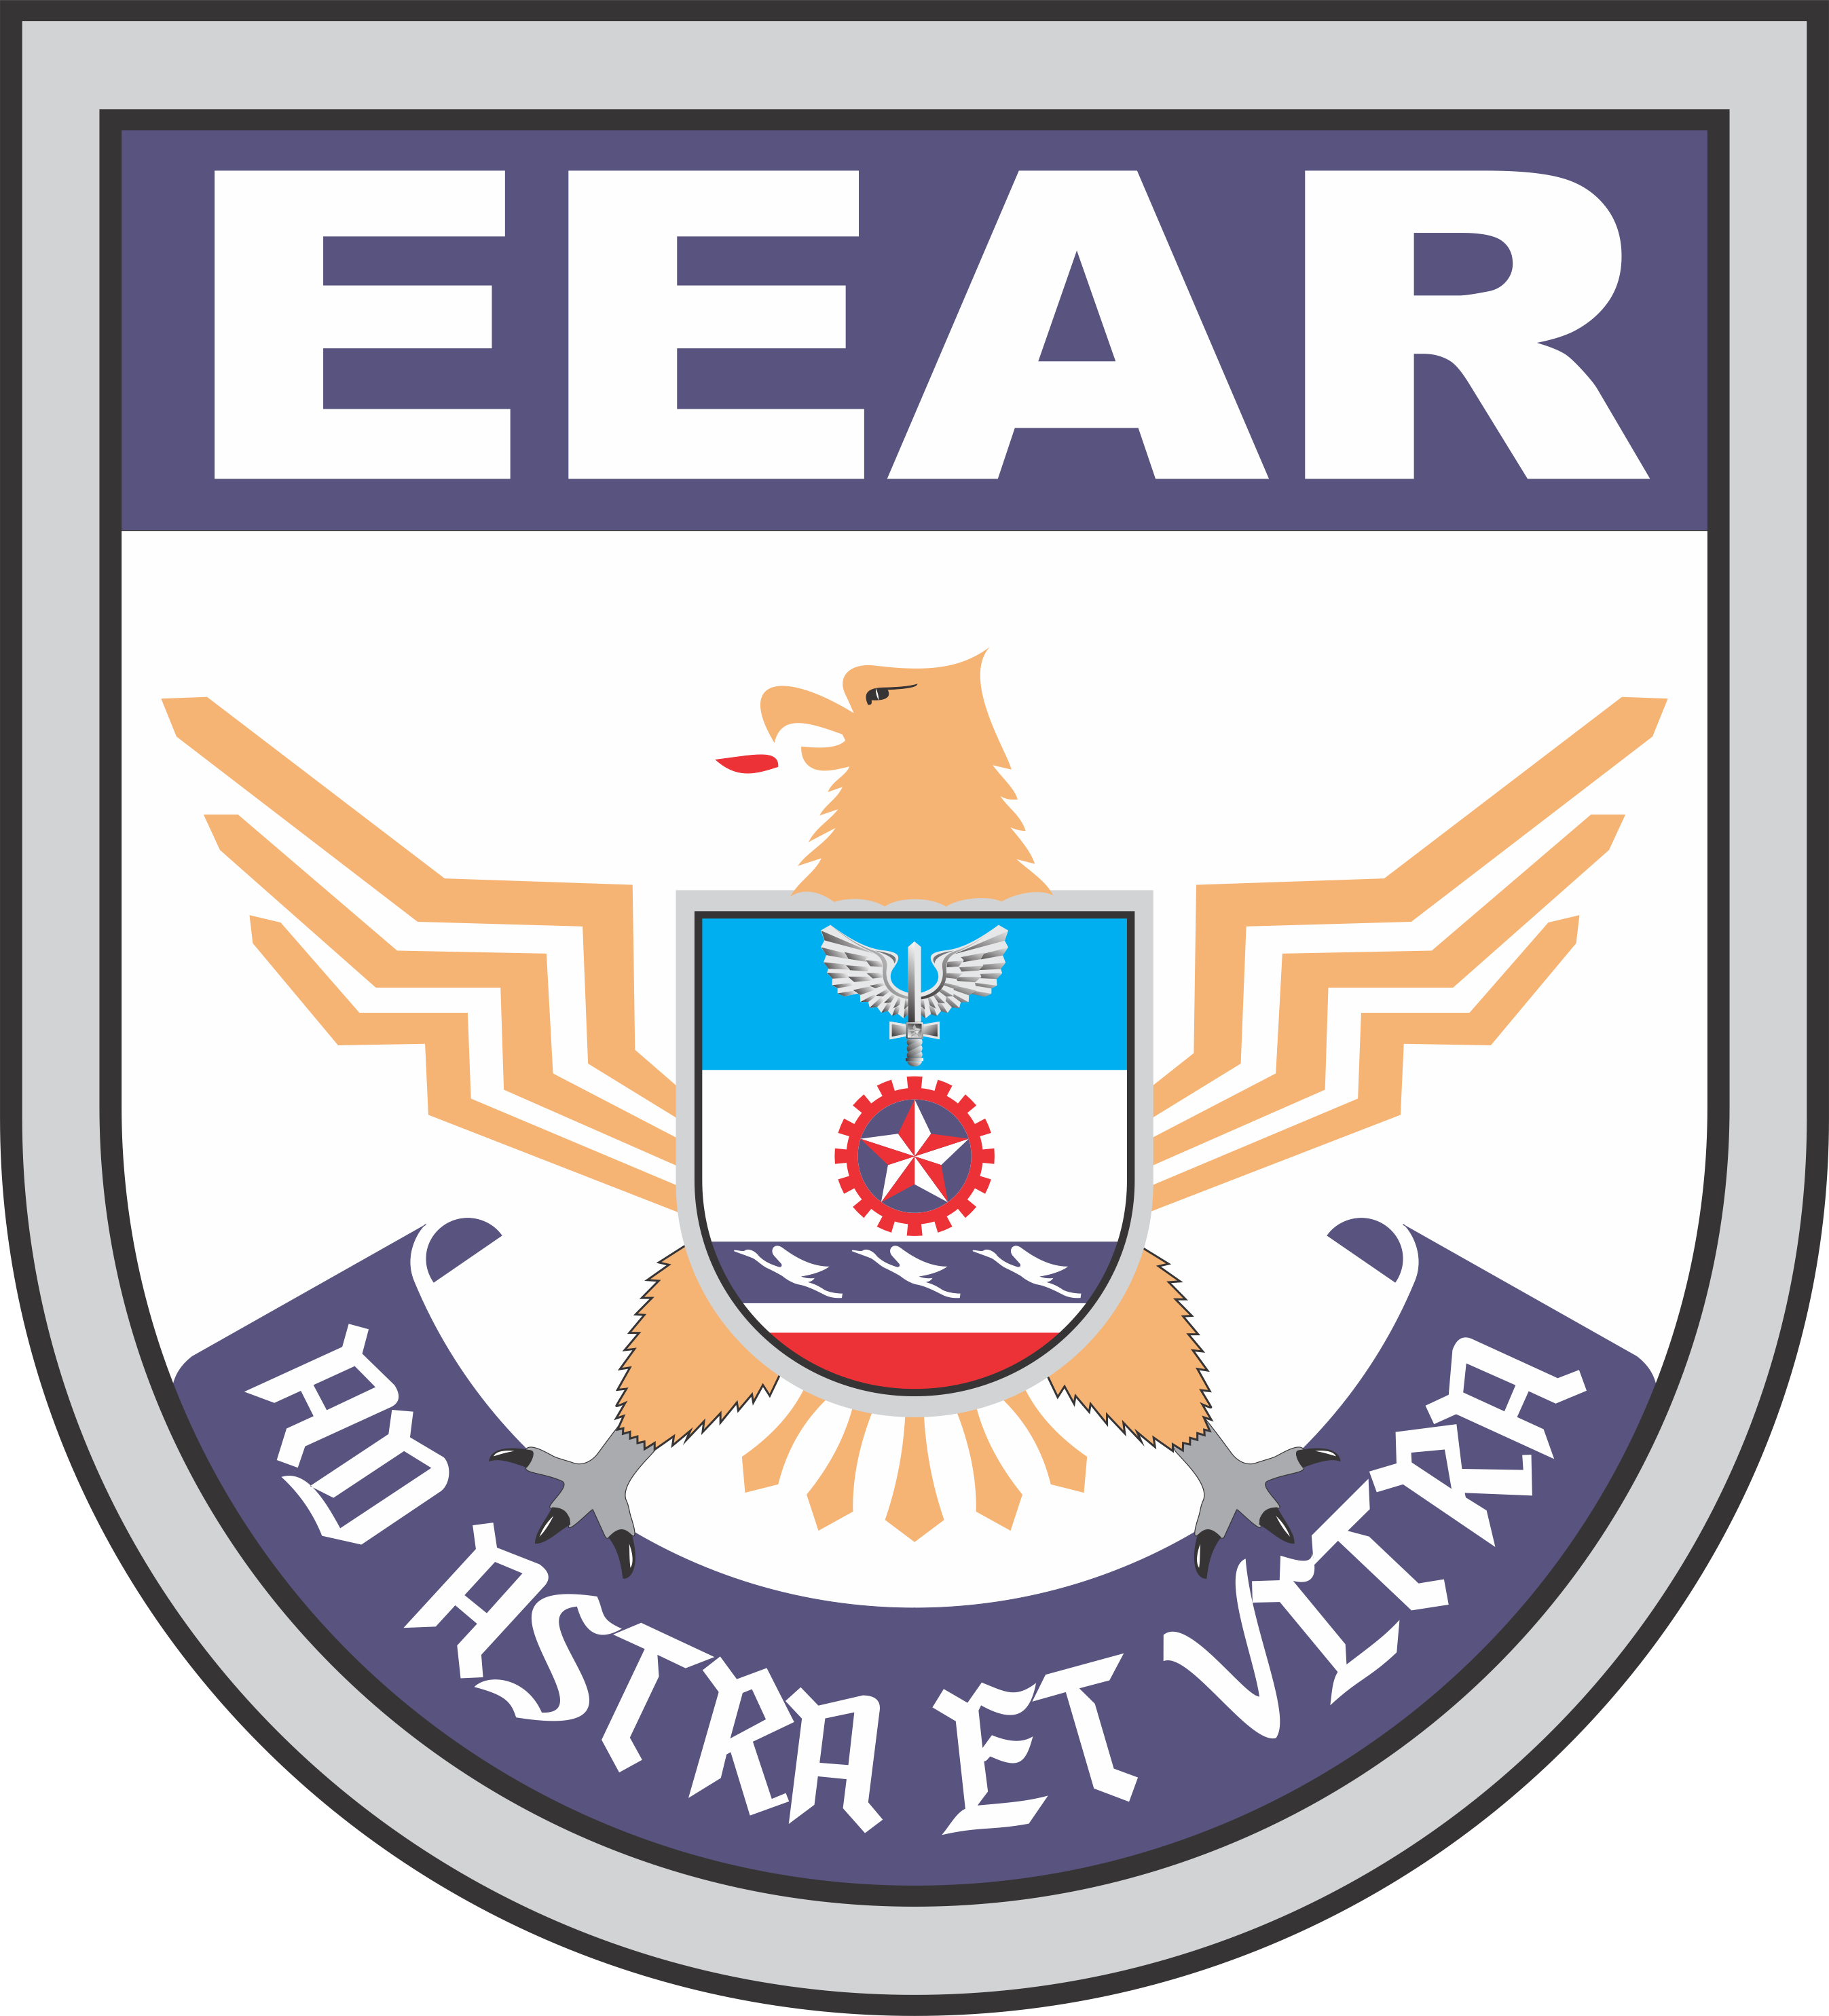 eear_logo